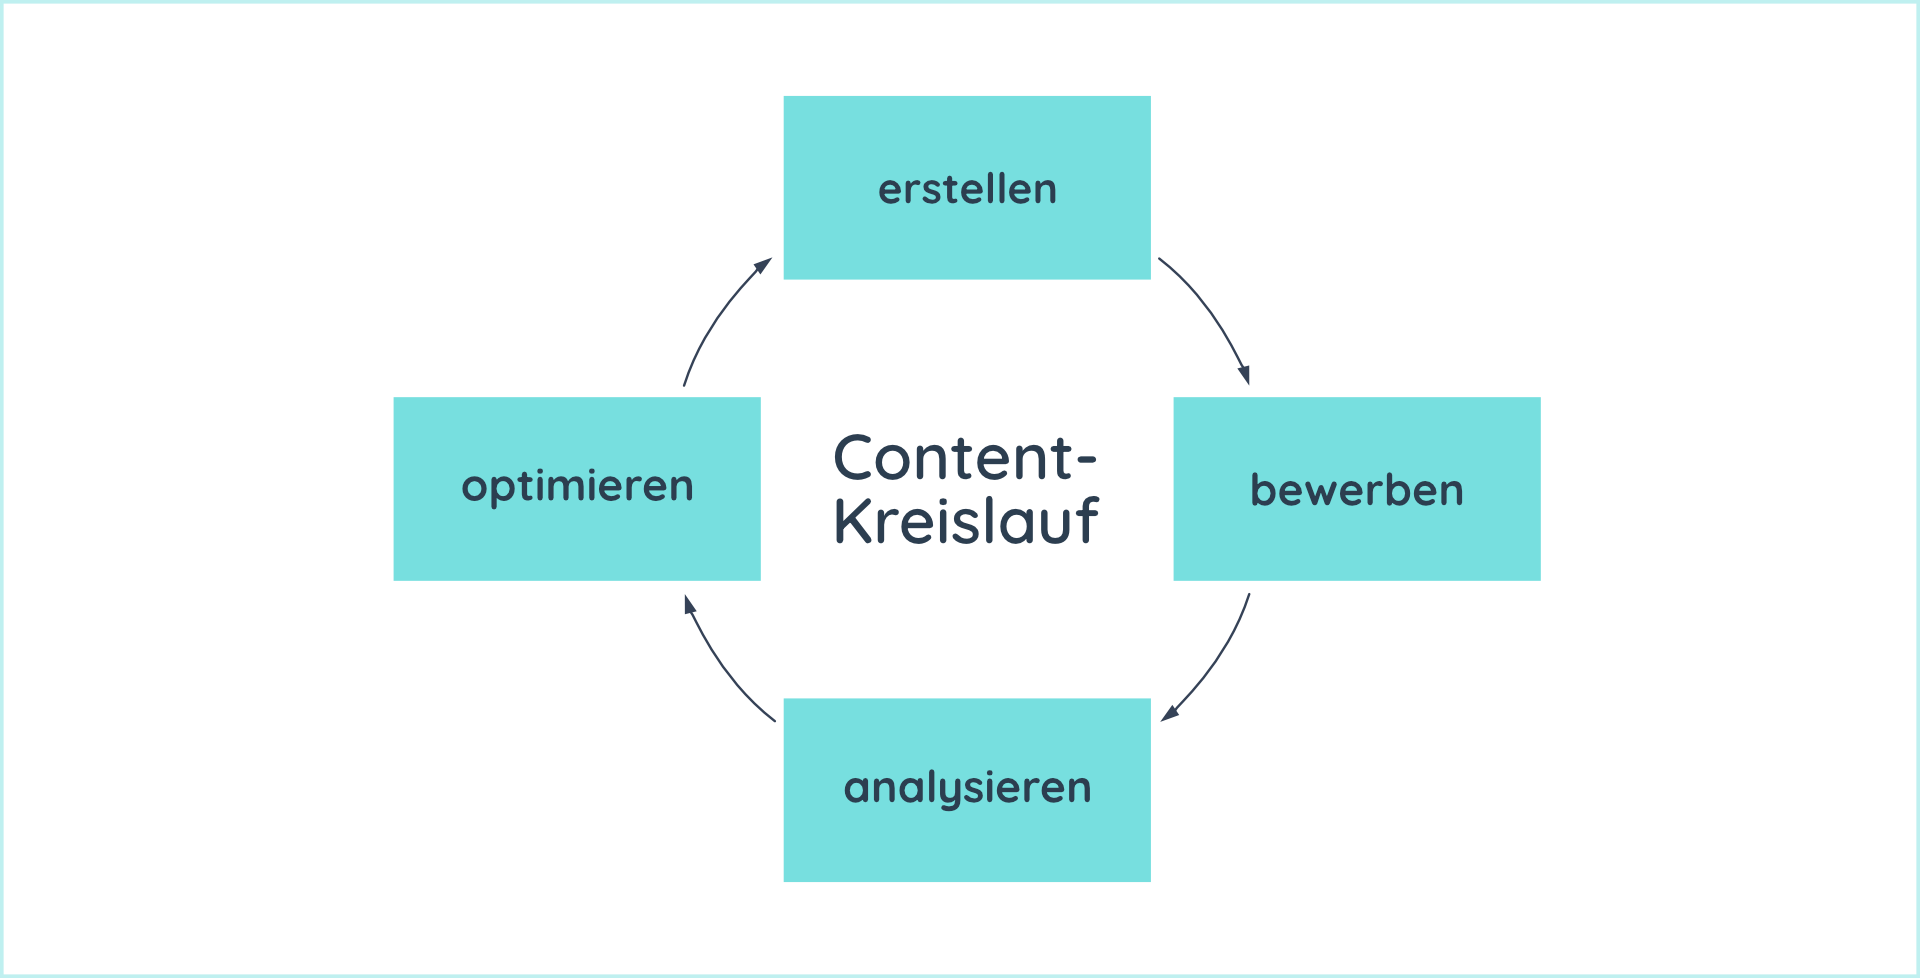 Der Content-Kreislauf besteht aus vier Phasen: erstellen, bewerben, analysieren und optimieren.